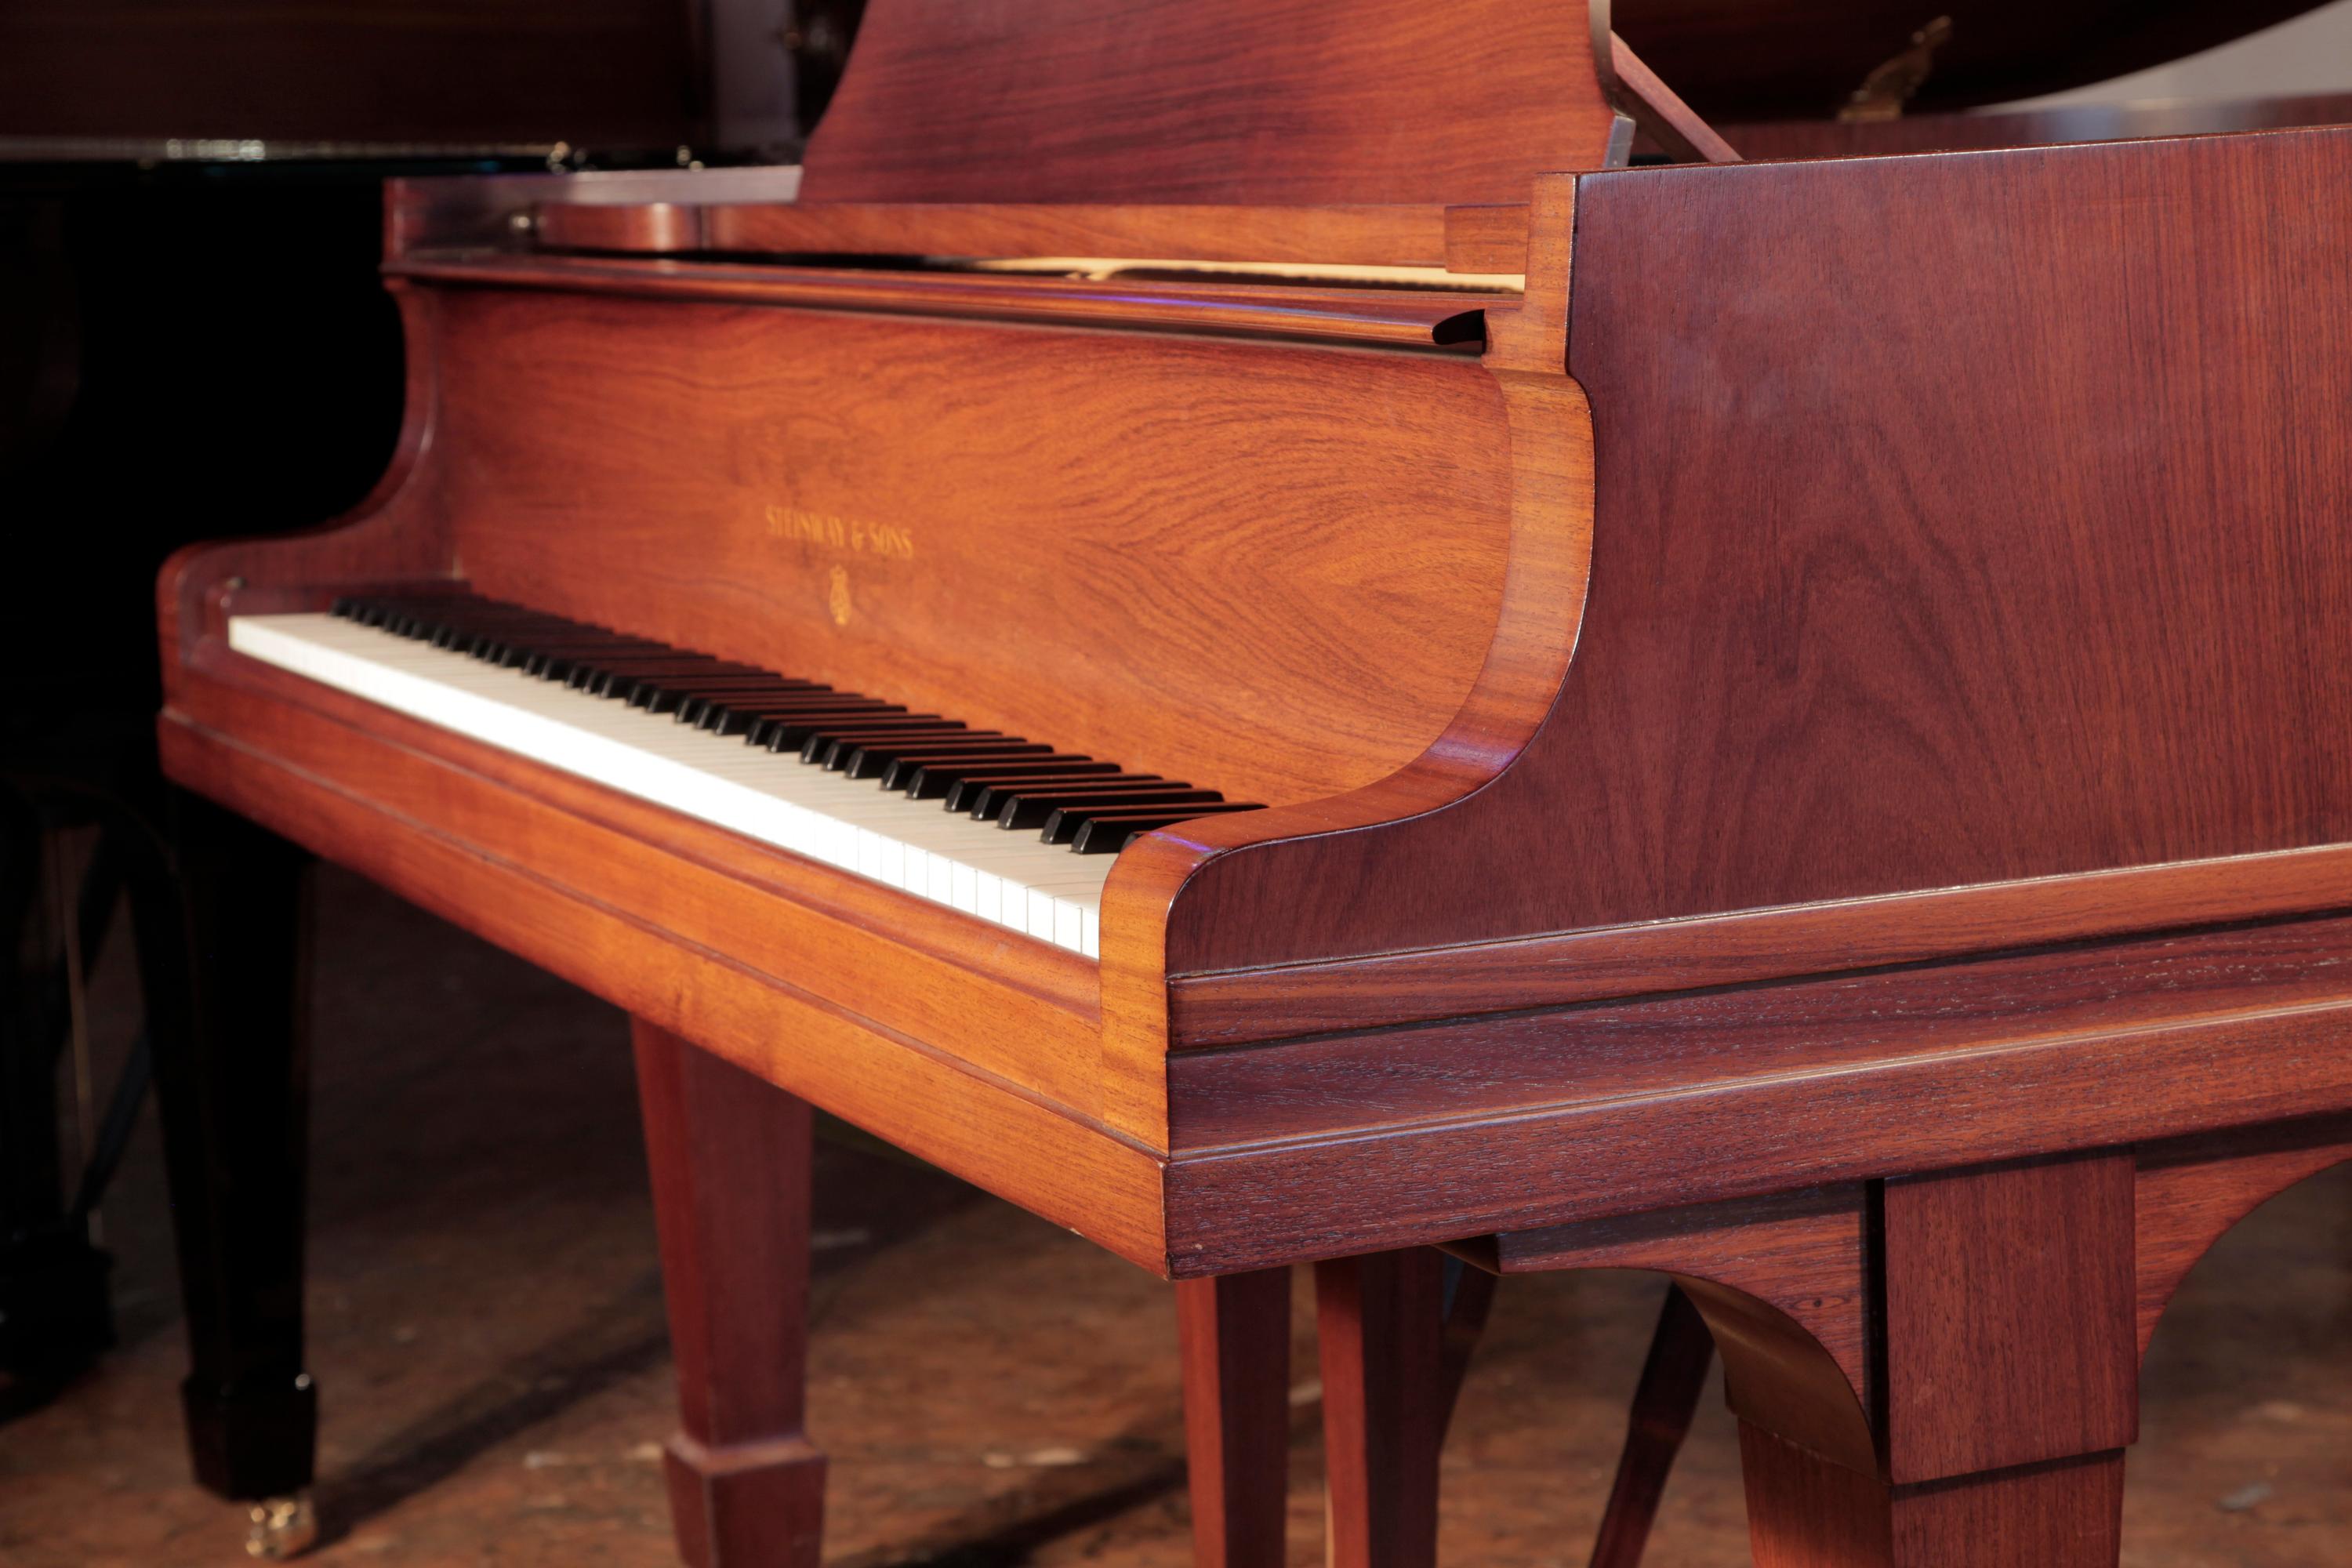 
Zu verkaufen ist ein umgebauter Steinway-Flügel Modell O von 1925 mit einem polierten Nussbaumgehäuse und Spatenbeinen. Das Klavier hat eine Tastatur mit achtundachtzig Noten und eine zweipedalige Lyra
Das Steinway-Logo ist in das Holz des Flügels